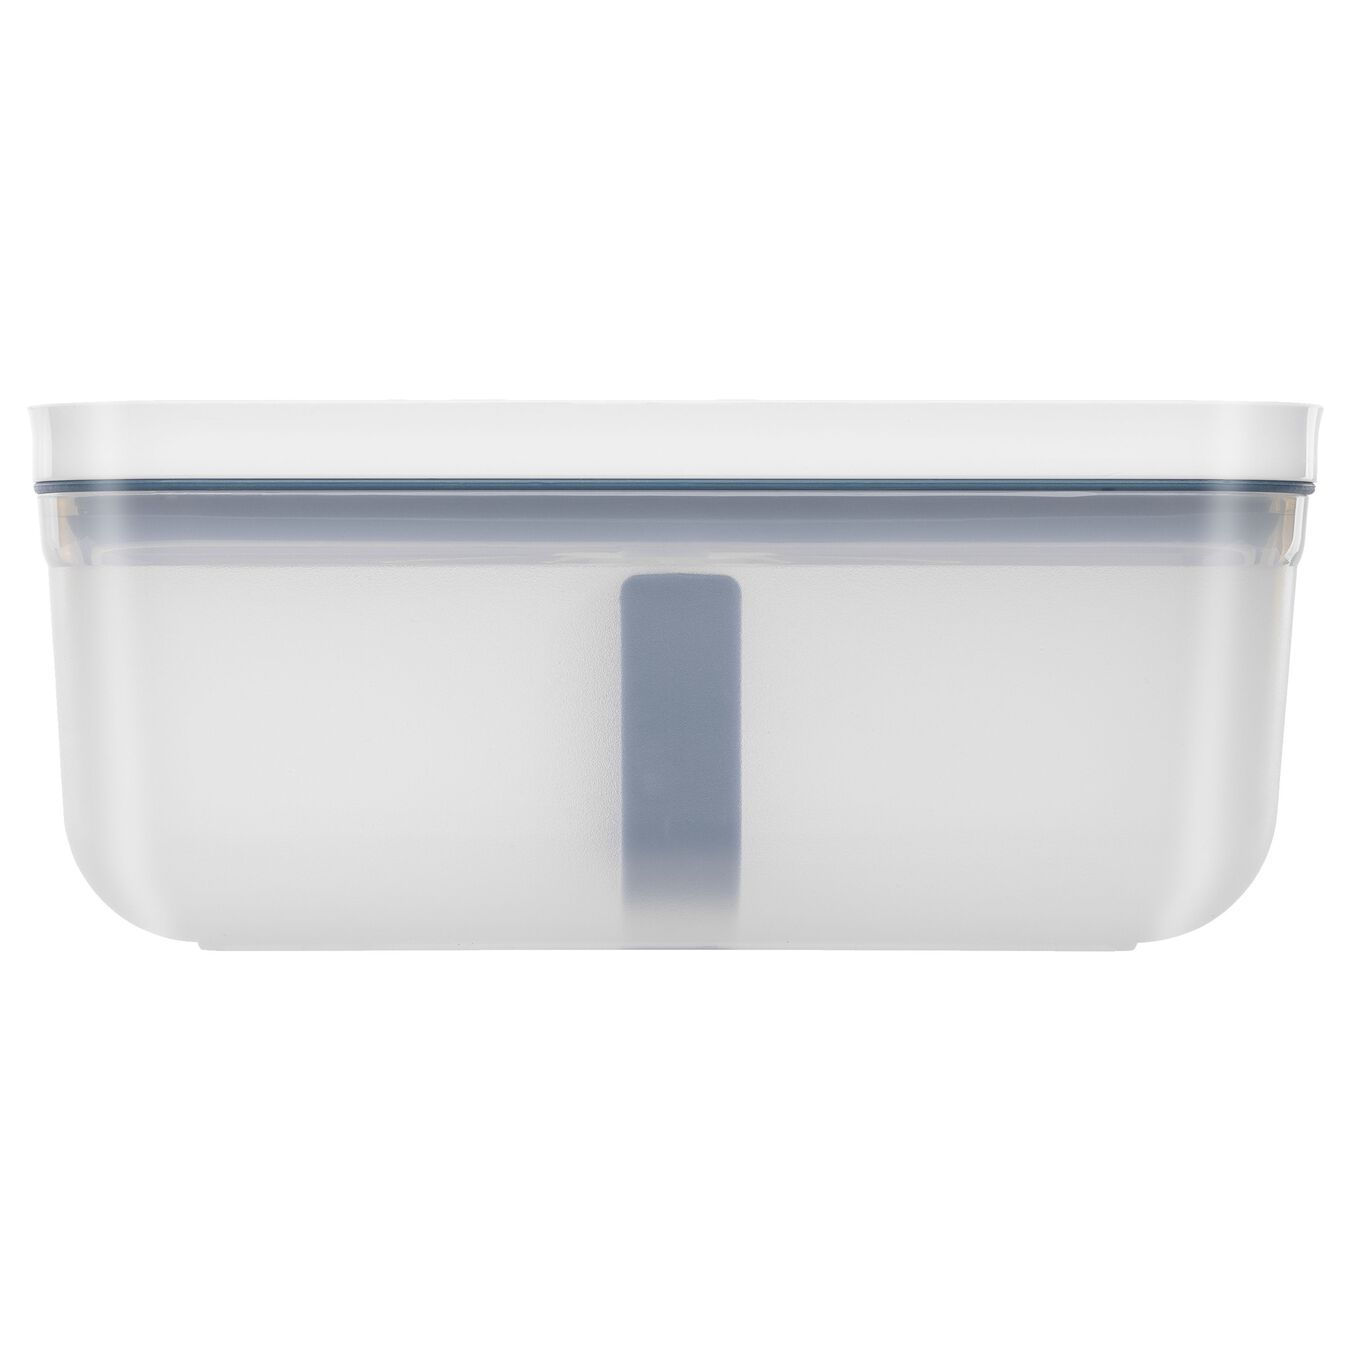 Vakumlu Yemek Taşıma Kabı, L, Plastik, yarı şeffaf-Akdeniz Mavisi,,large 3